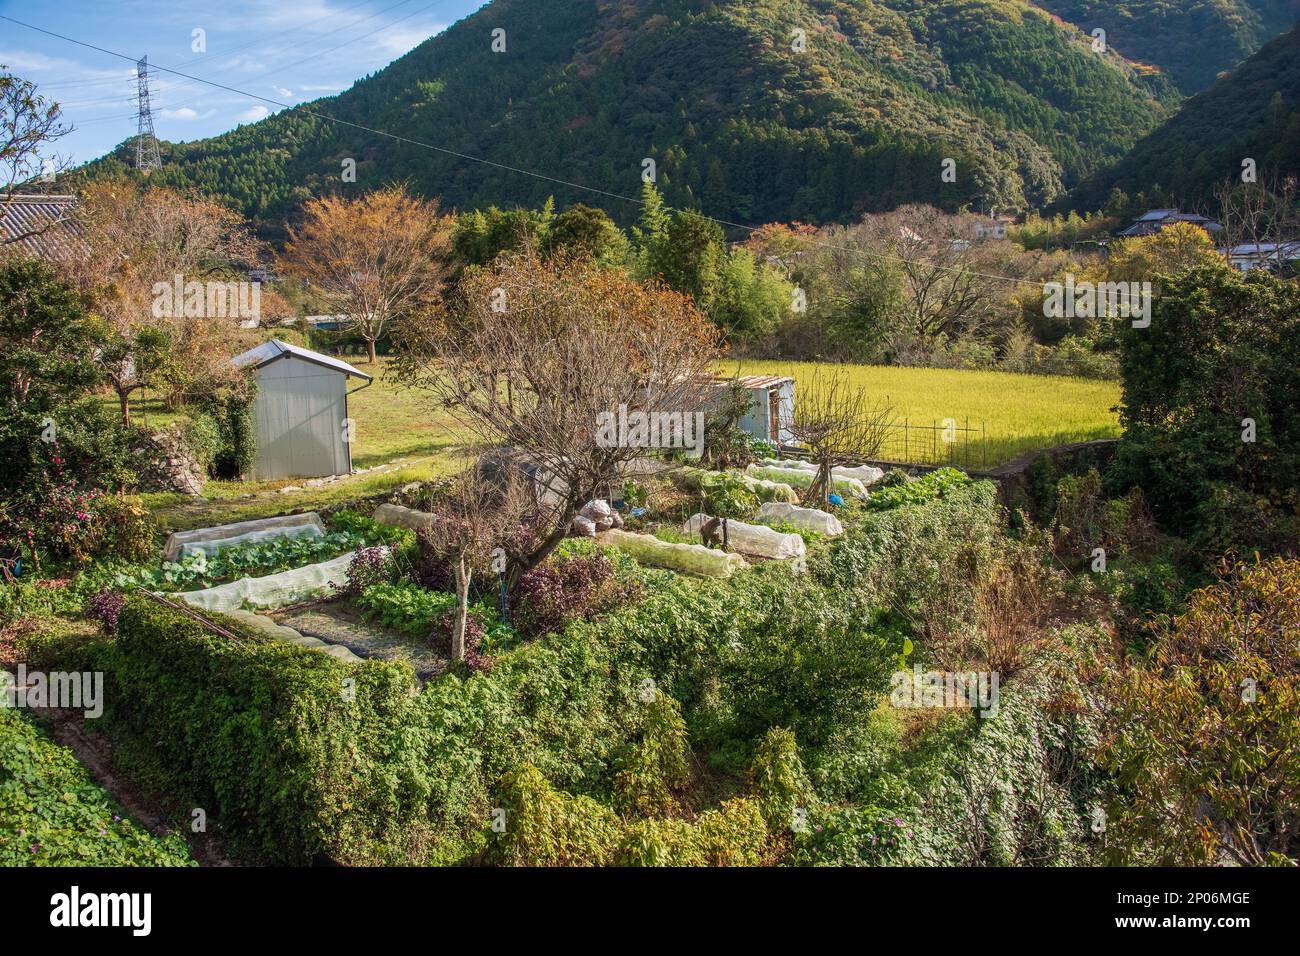 Jardin potager et rizières, Kamiyama, île de Shikoku, Japon Banque D'Images